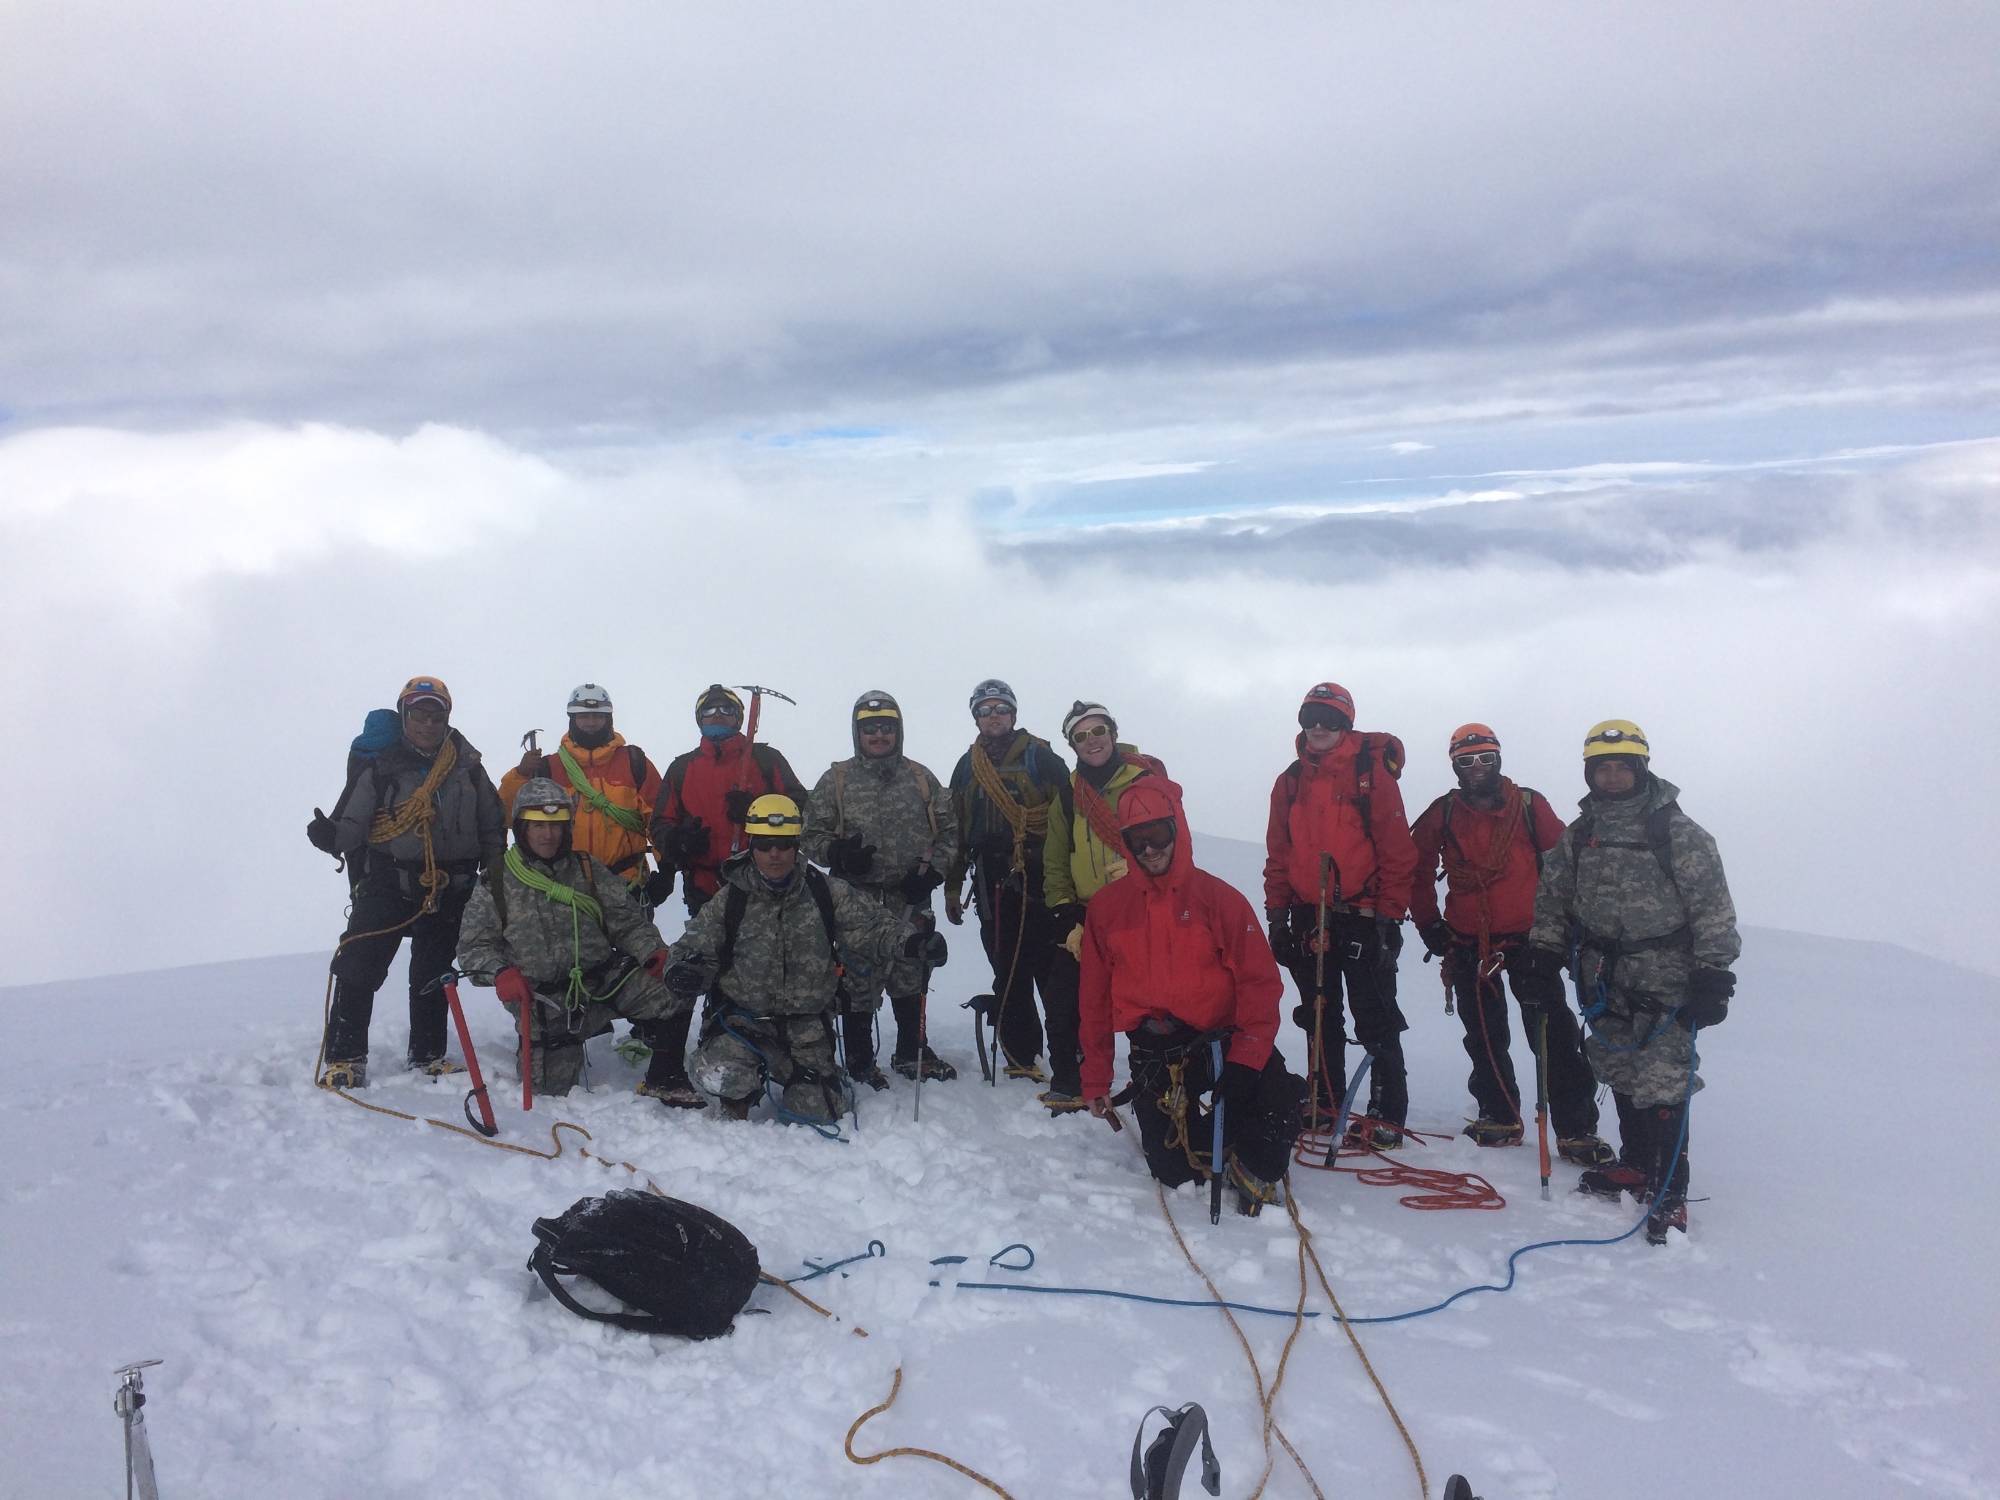 Ascensiones en Ecuador con guías de montaña - HighSummits